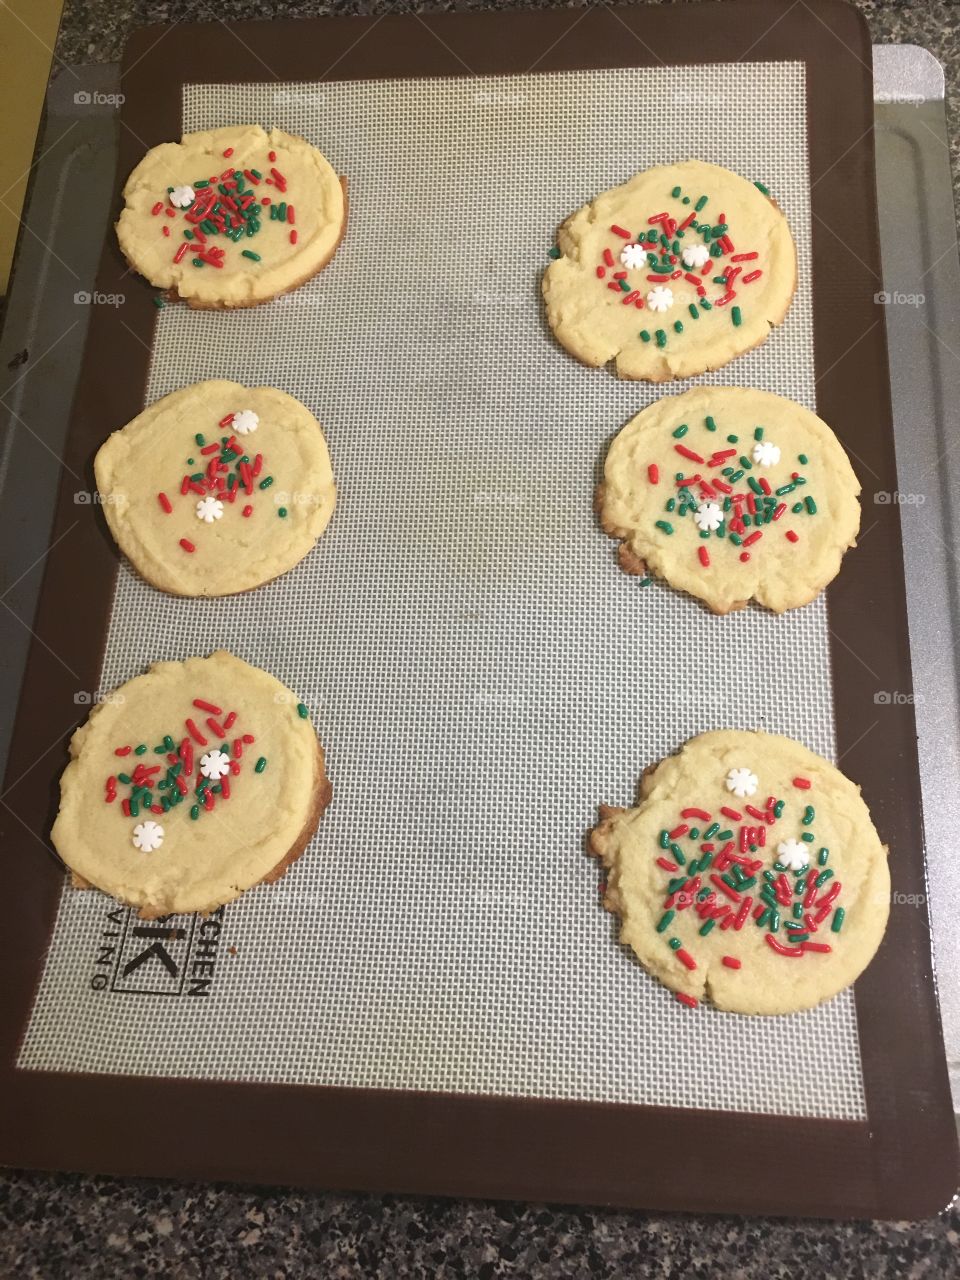 Cookies for Santa 